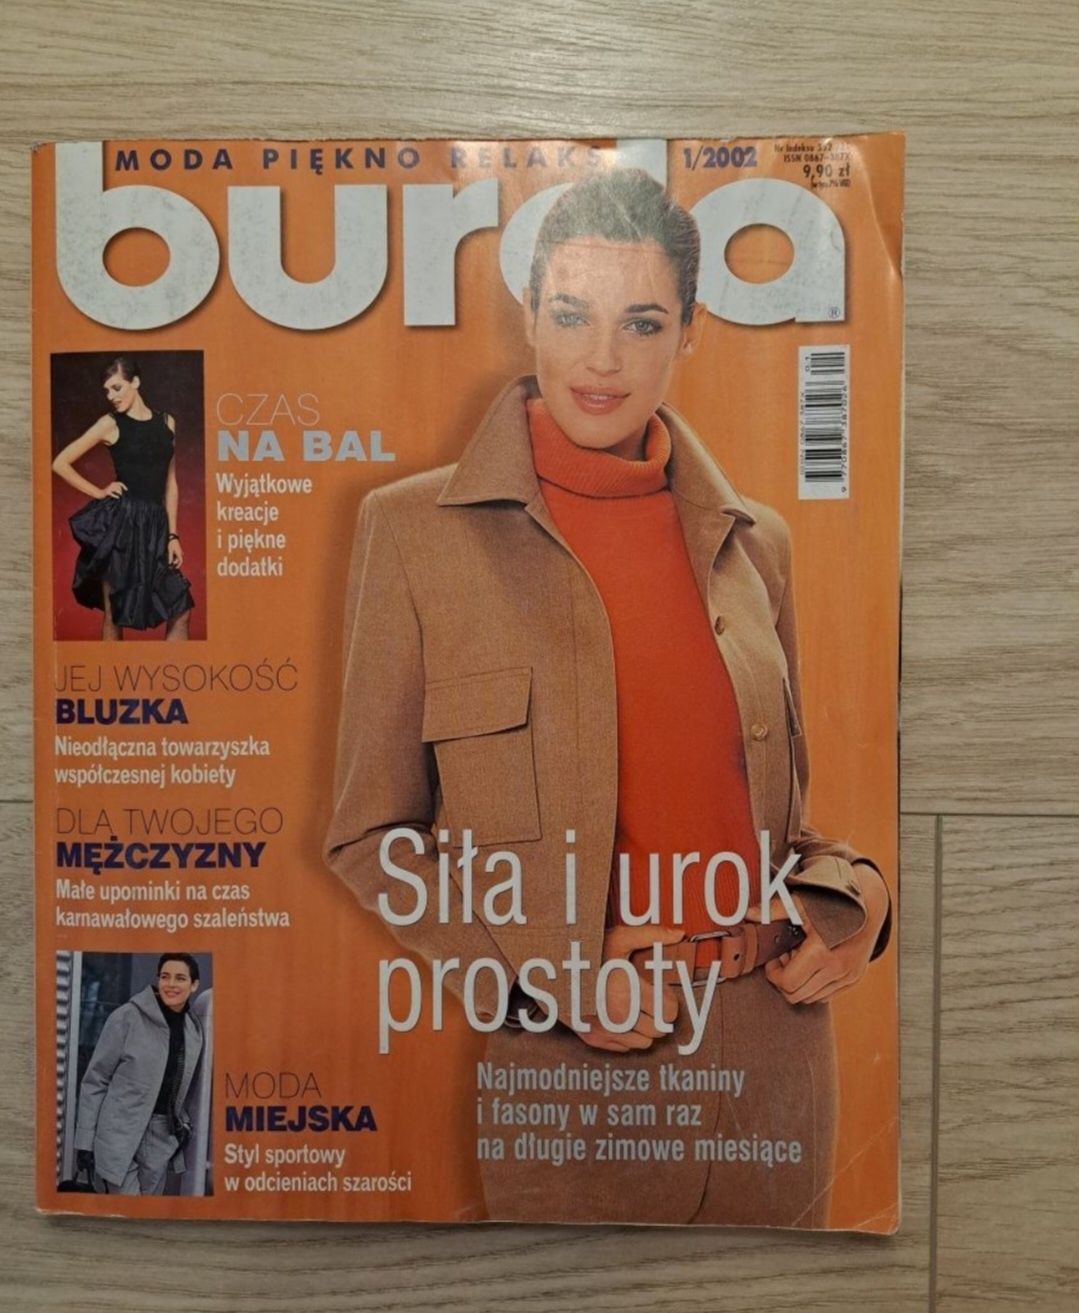 Burda - 1/2002 oraz 8/2007